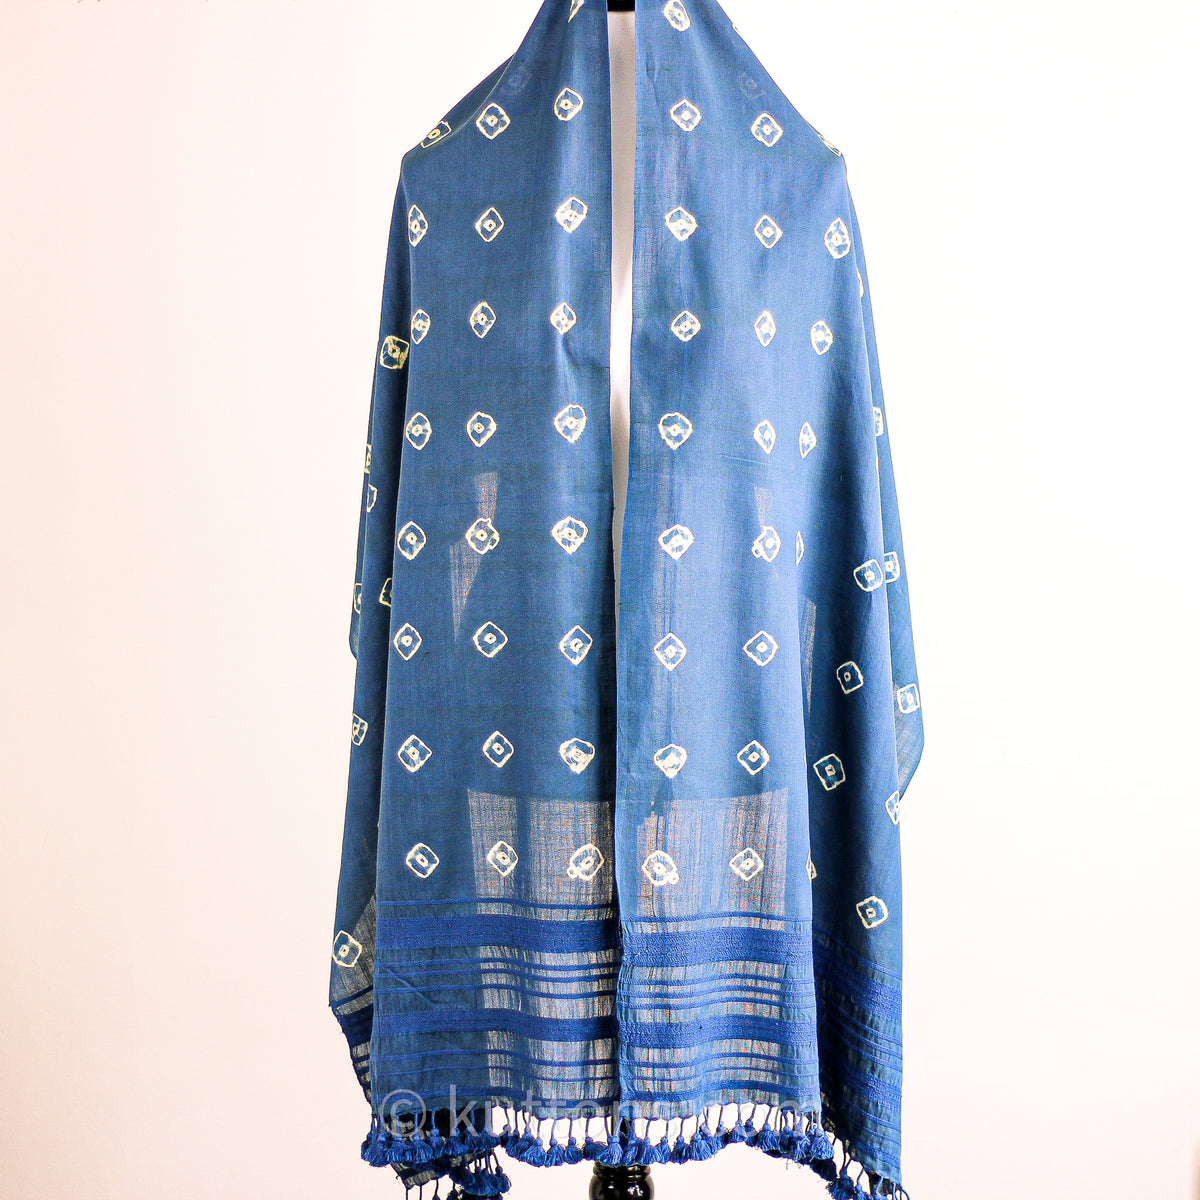 shibori tie dye cotton scarves indigo blue